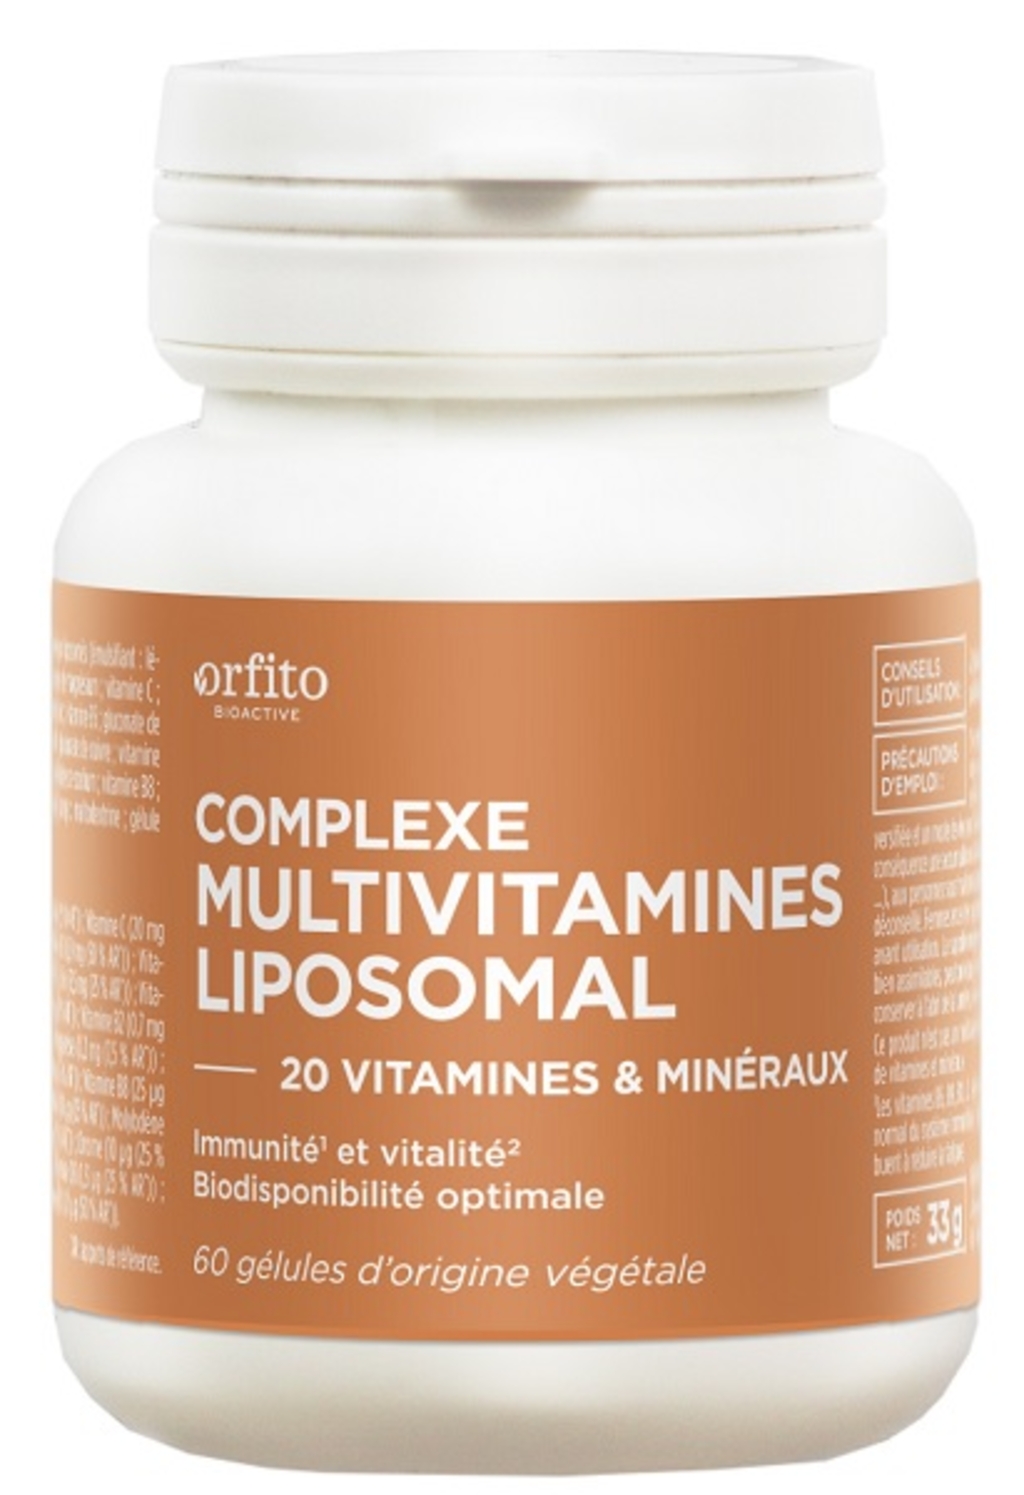 Multi vitaminés minéraux oligo éléments 60 gélules